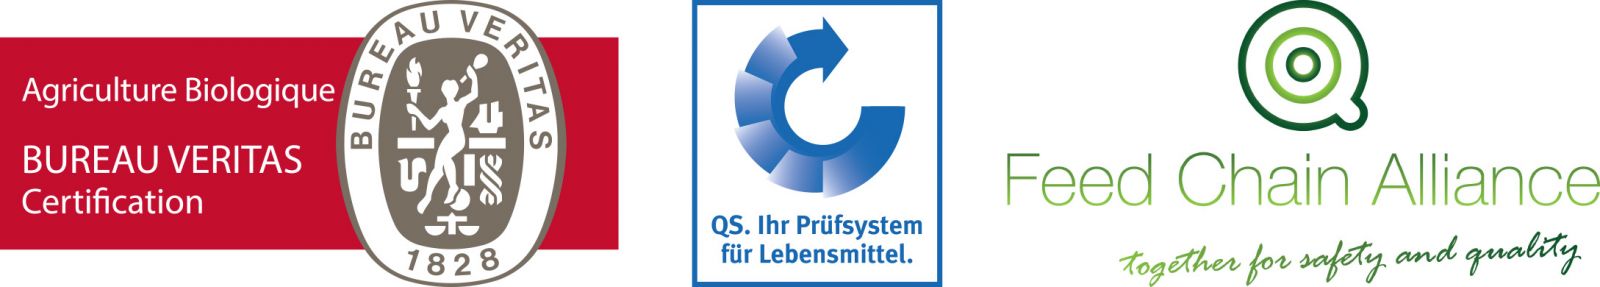 Logos certification qualité